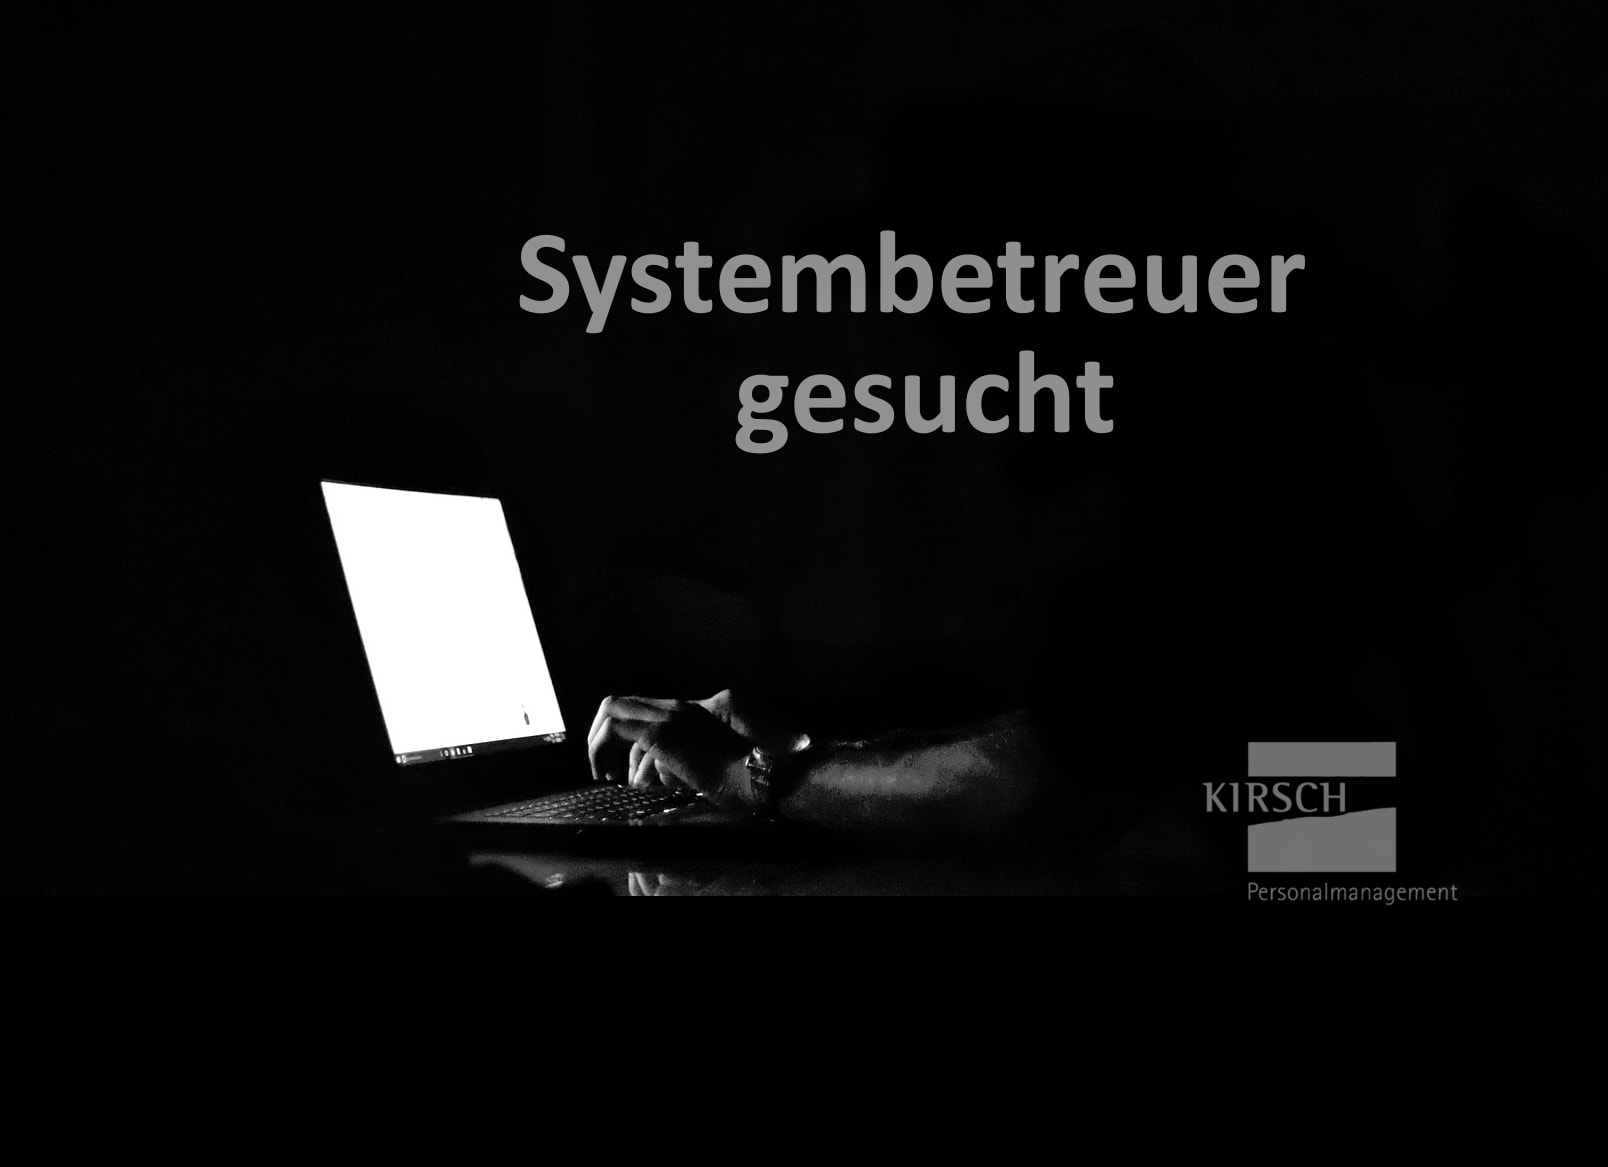 Systembetreuer gesucht - Kirsch GmbH Personalmanagement